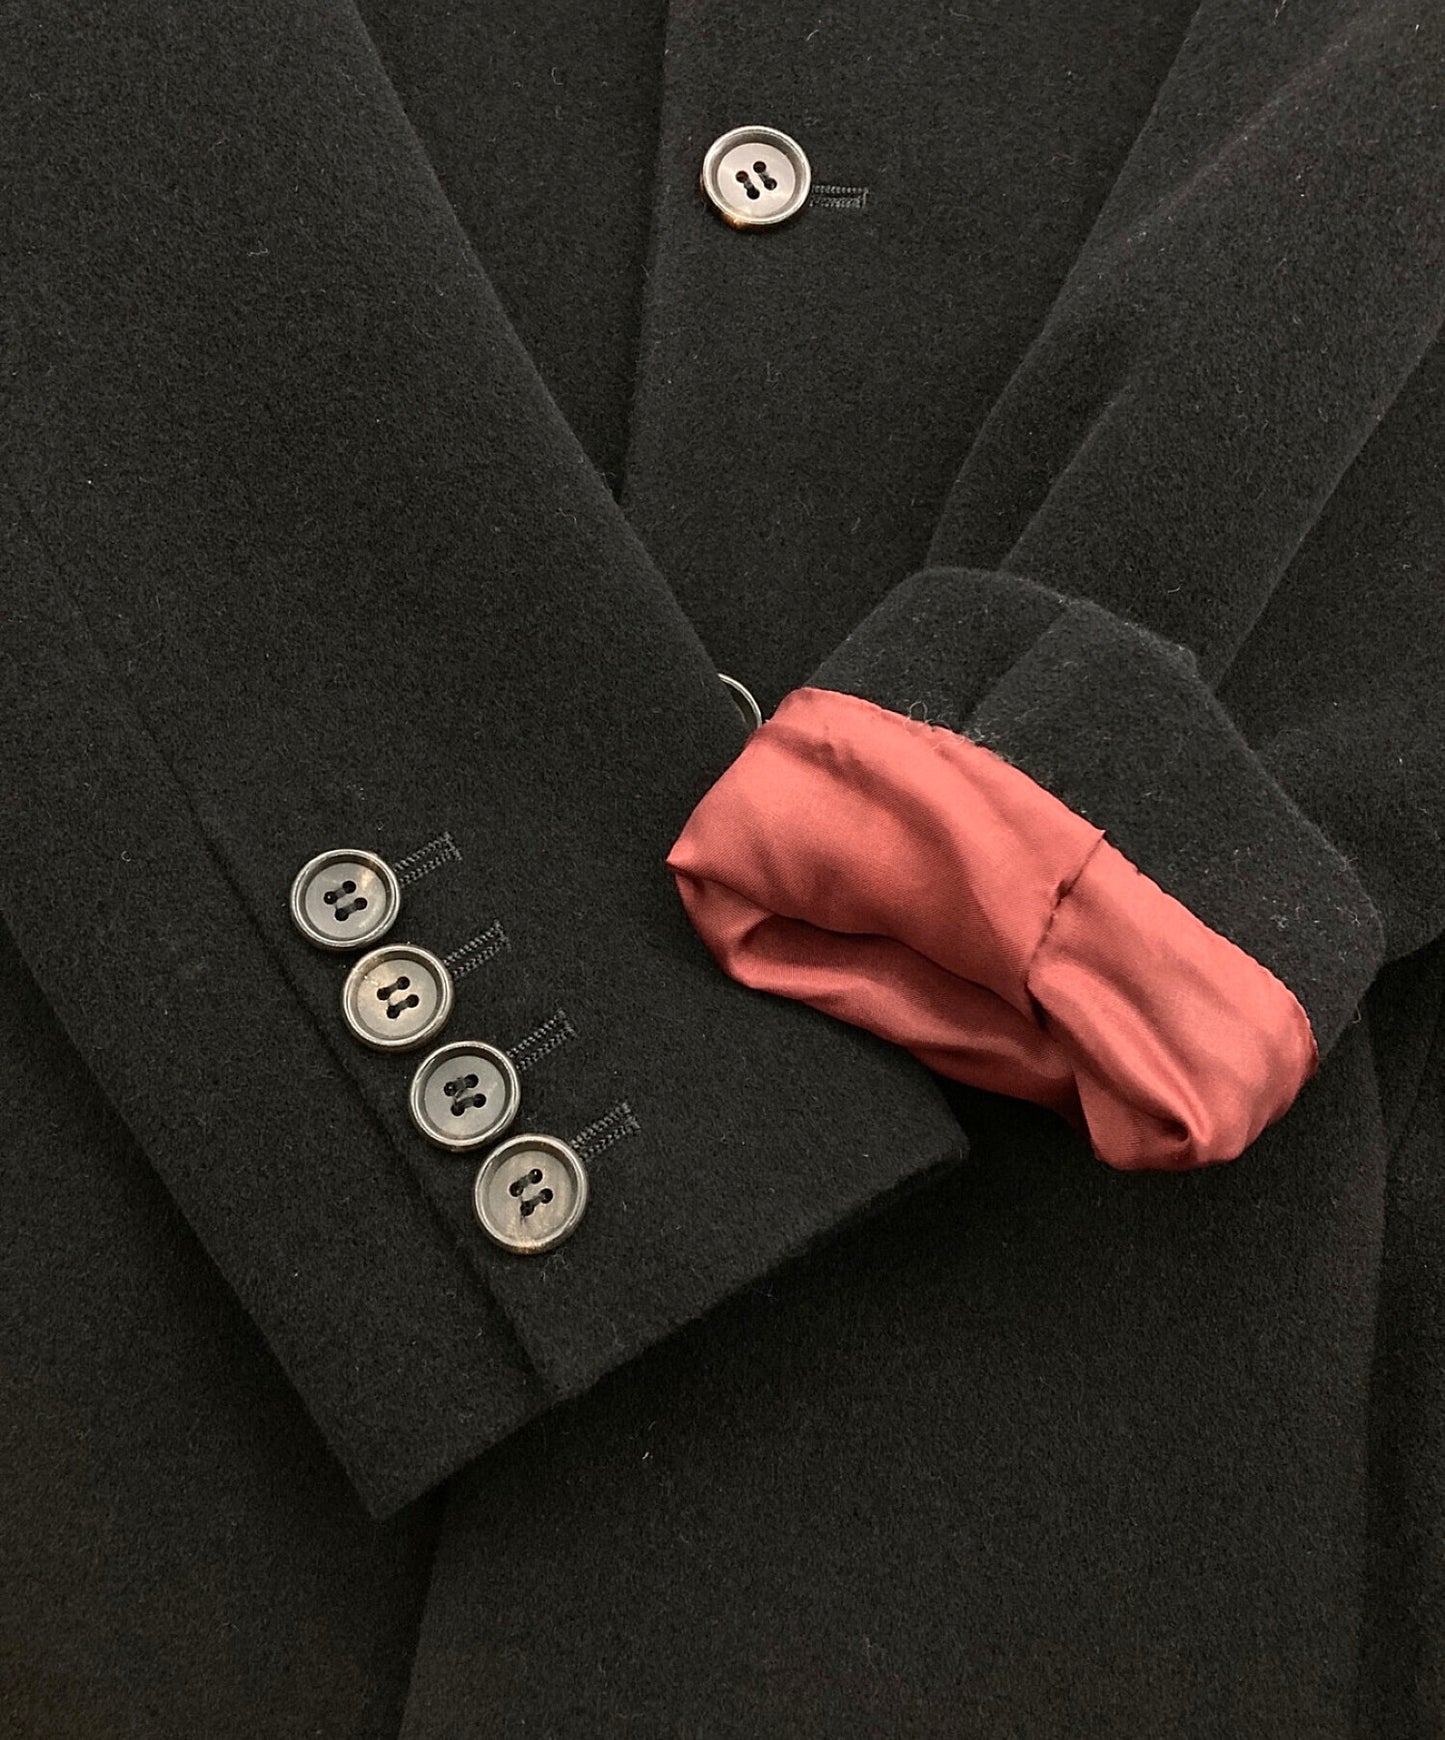 [Pre-owned] Jean Paul Gaultier FEMME Flared hem 3B long coat